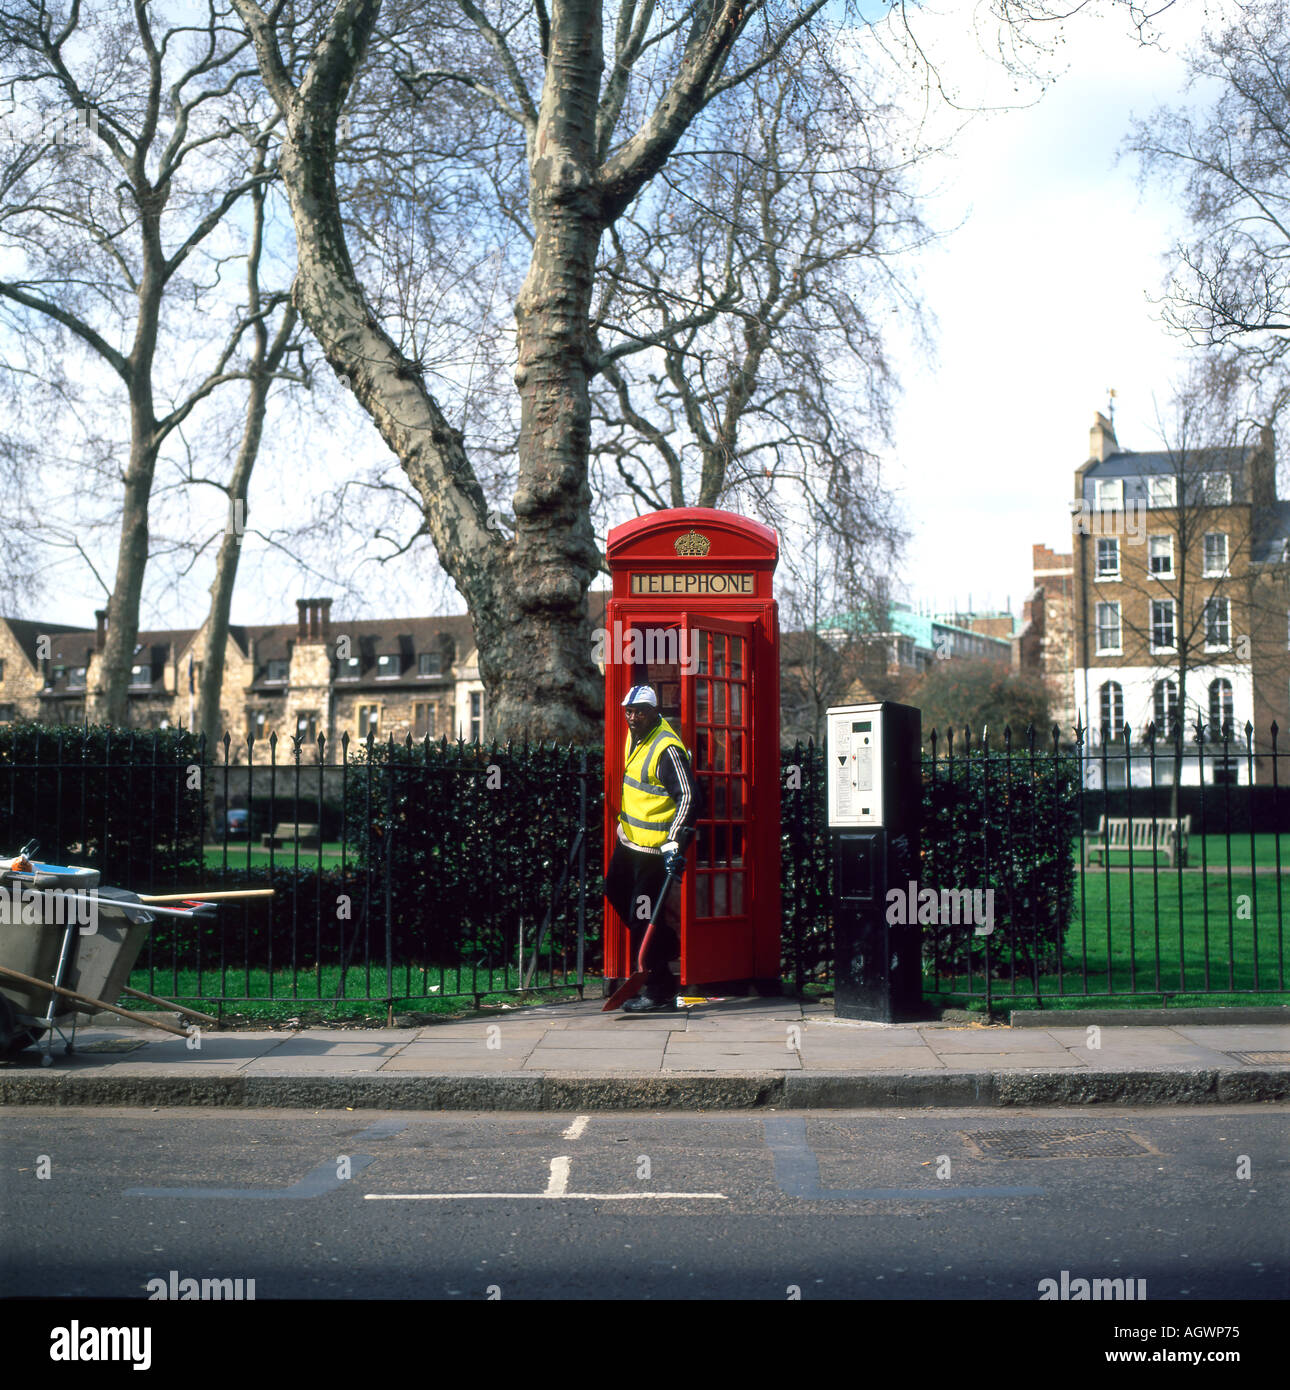 Nettoyage nettoyant téléphone rouge fort en chartreuse Street près de Charterhouse Square à Londres Angleterre Royaume-uni KATHY DEWITT Banque D'Images